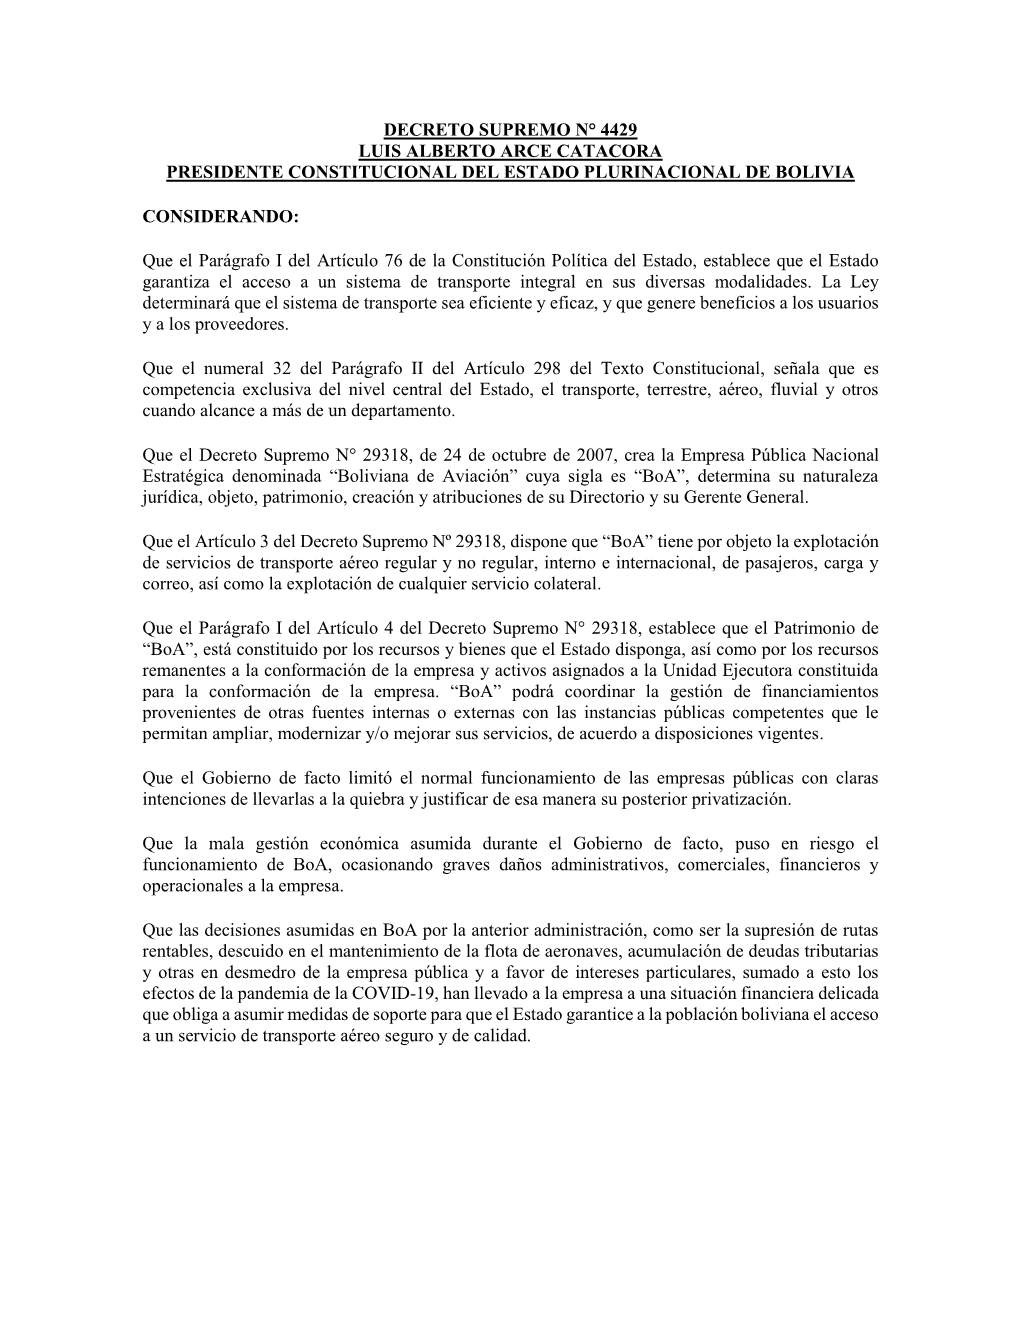 Decreto Supremo N° 4429 Luis Alberto Arce Catacora Presidente Constitucional Del Estado Plurinacional De Bolivia